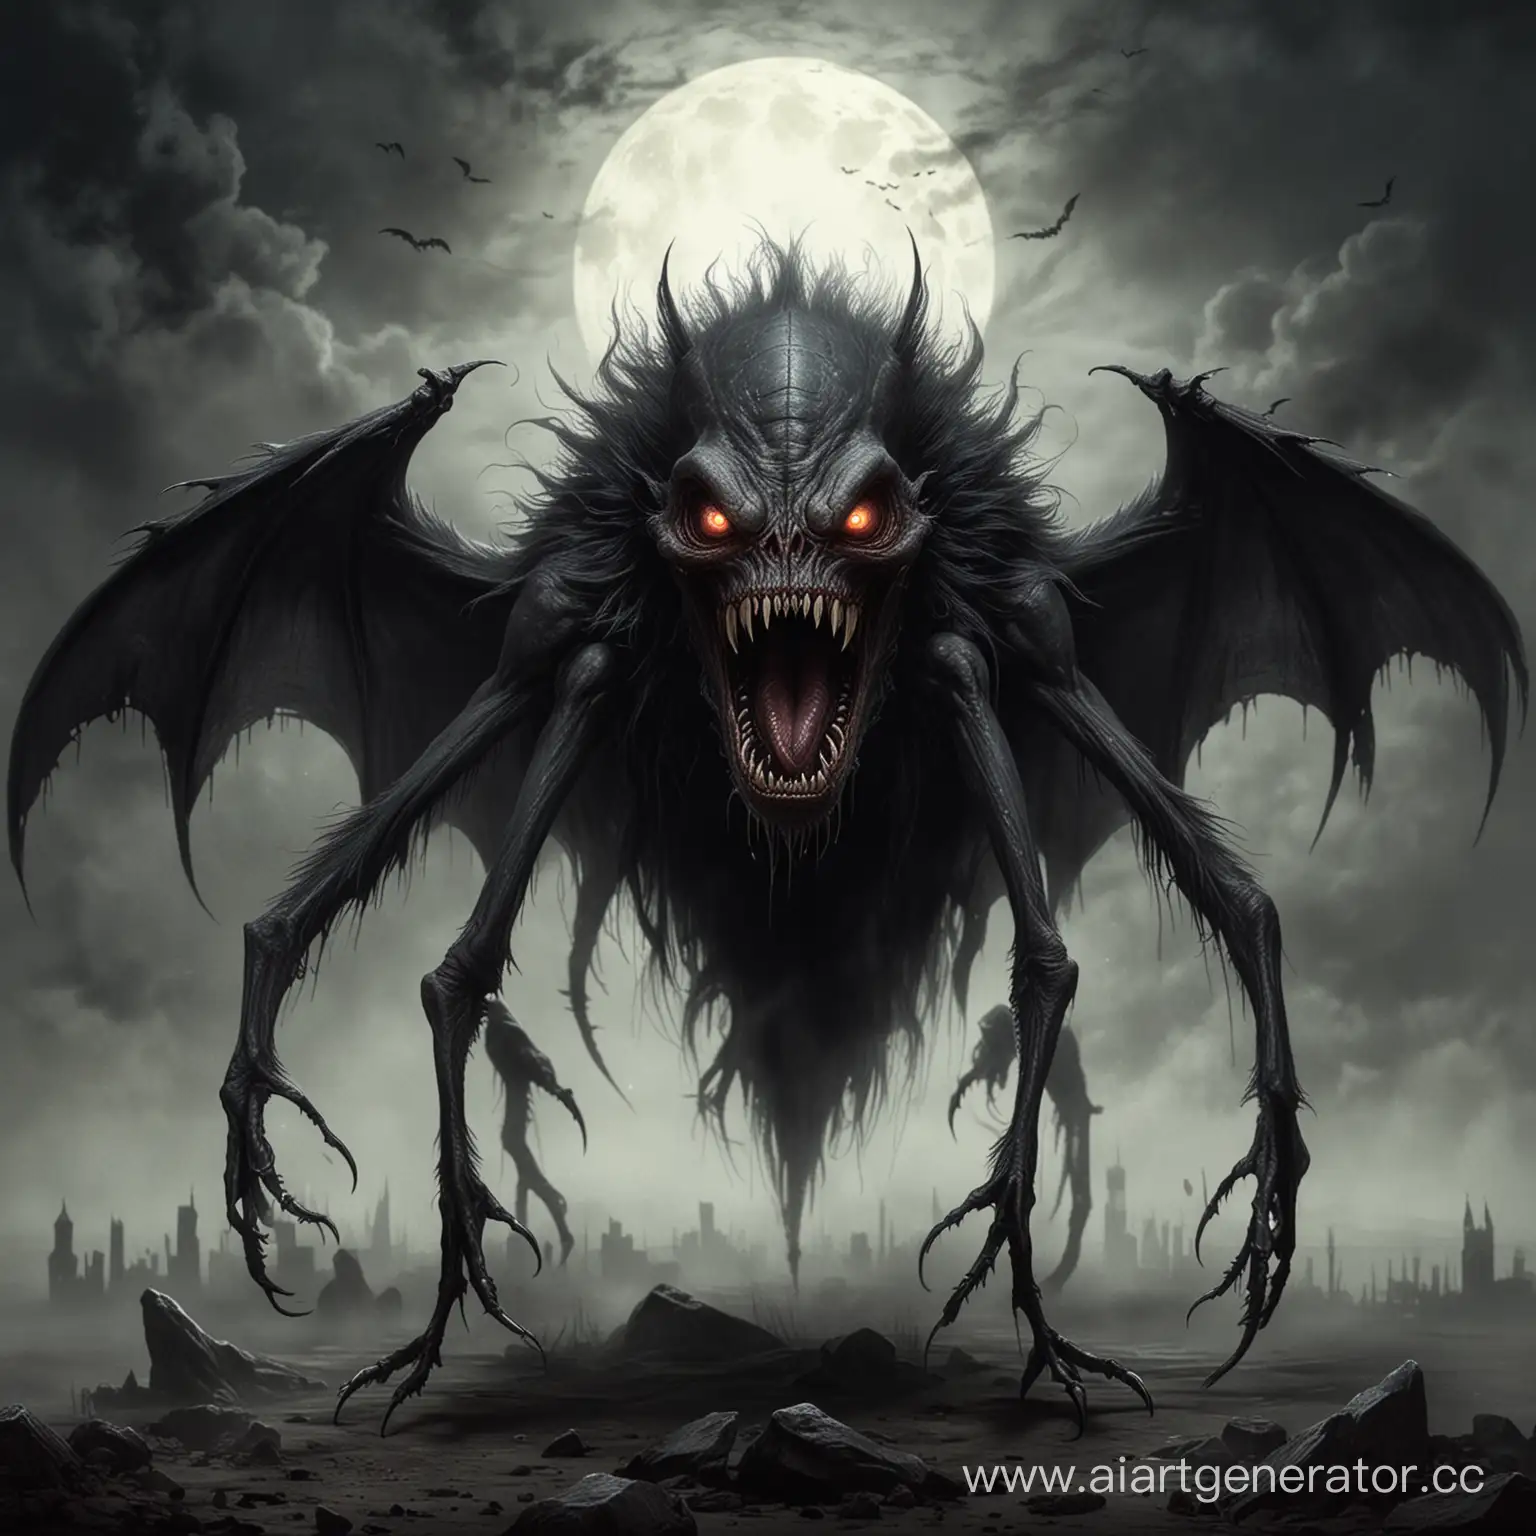 нарисуй монстра вампира из черной дымки, похож на блоху, много глаз и острых зубов, его ноги тонкие и длинные